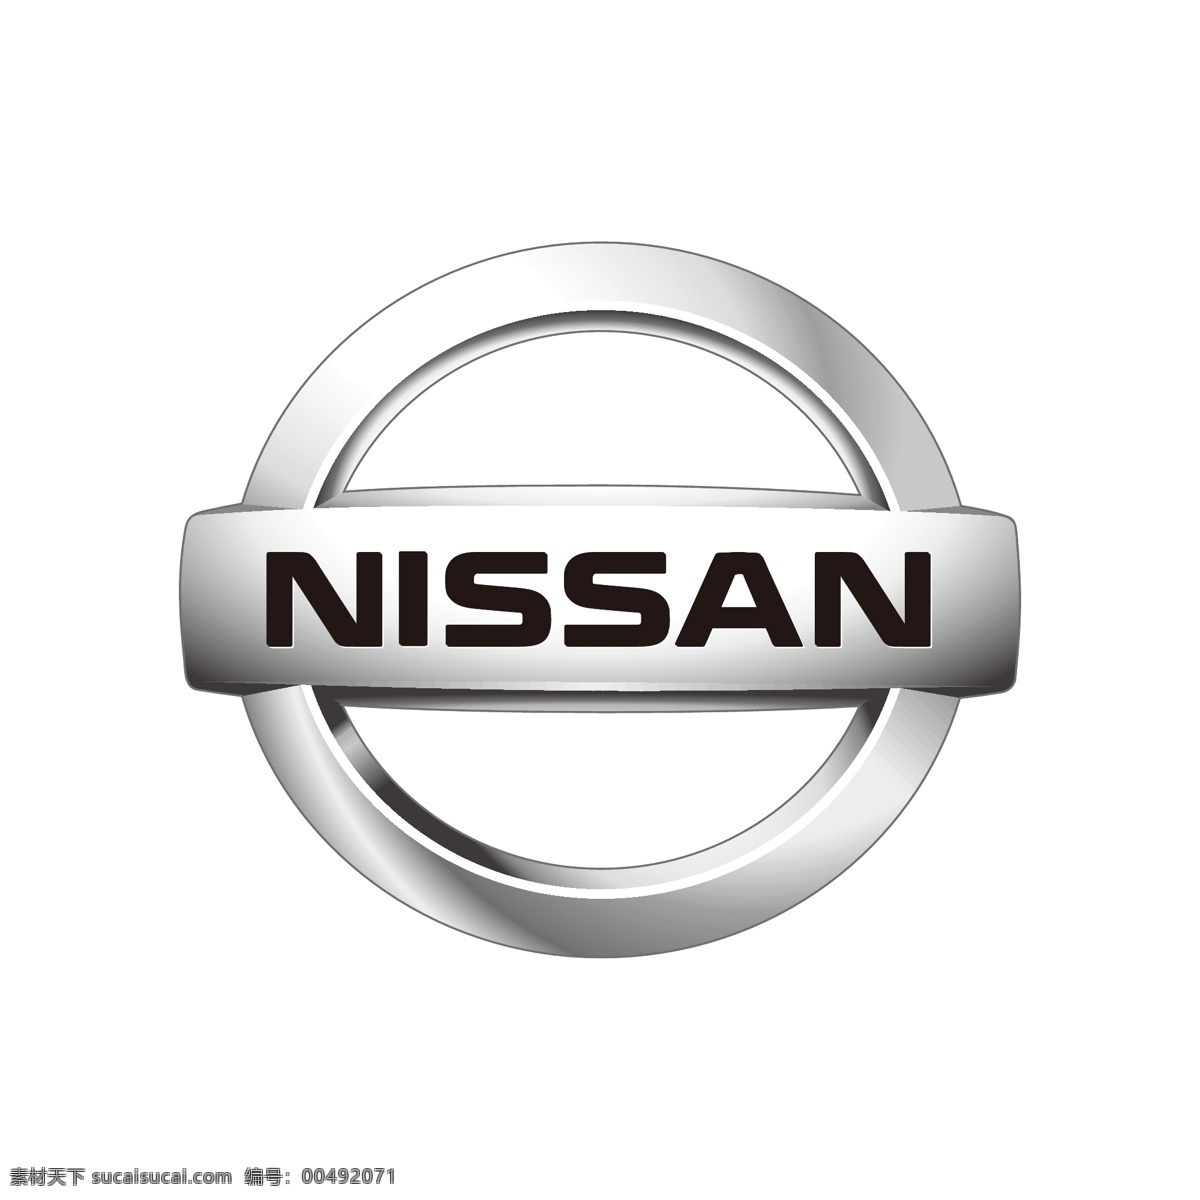 日产汽车 nissan 汽车 车 logo 车标 矢量 图形 标准 电动车 行驶 驾驶 驾驶人 开车 代驾 logo集合 标志图标 企业 标志